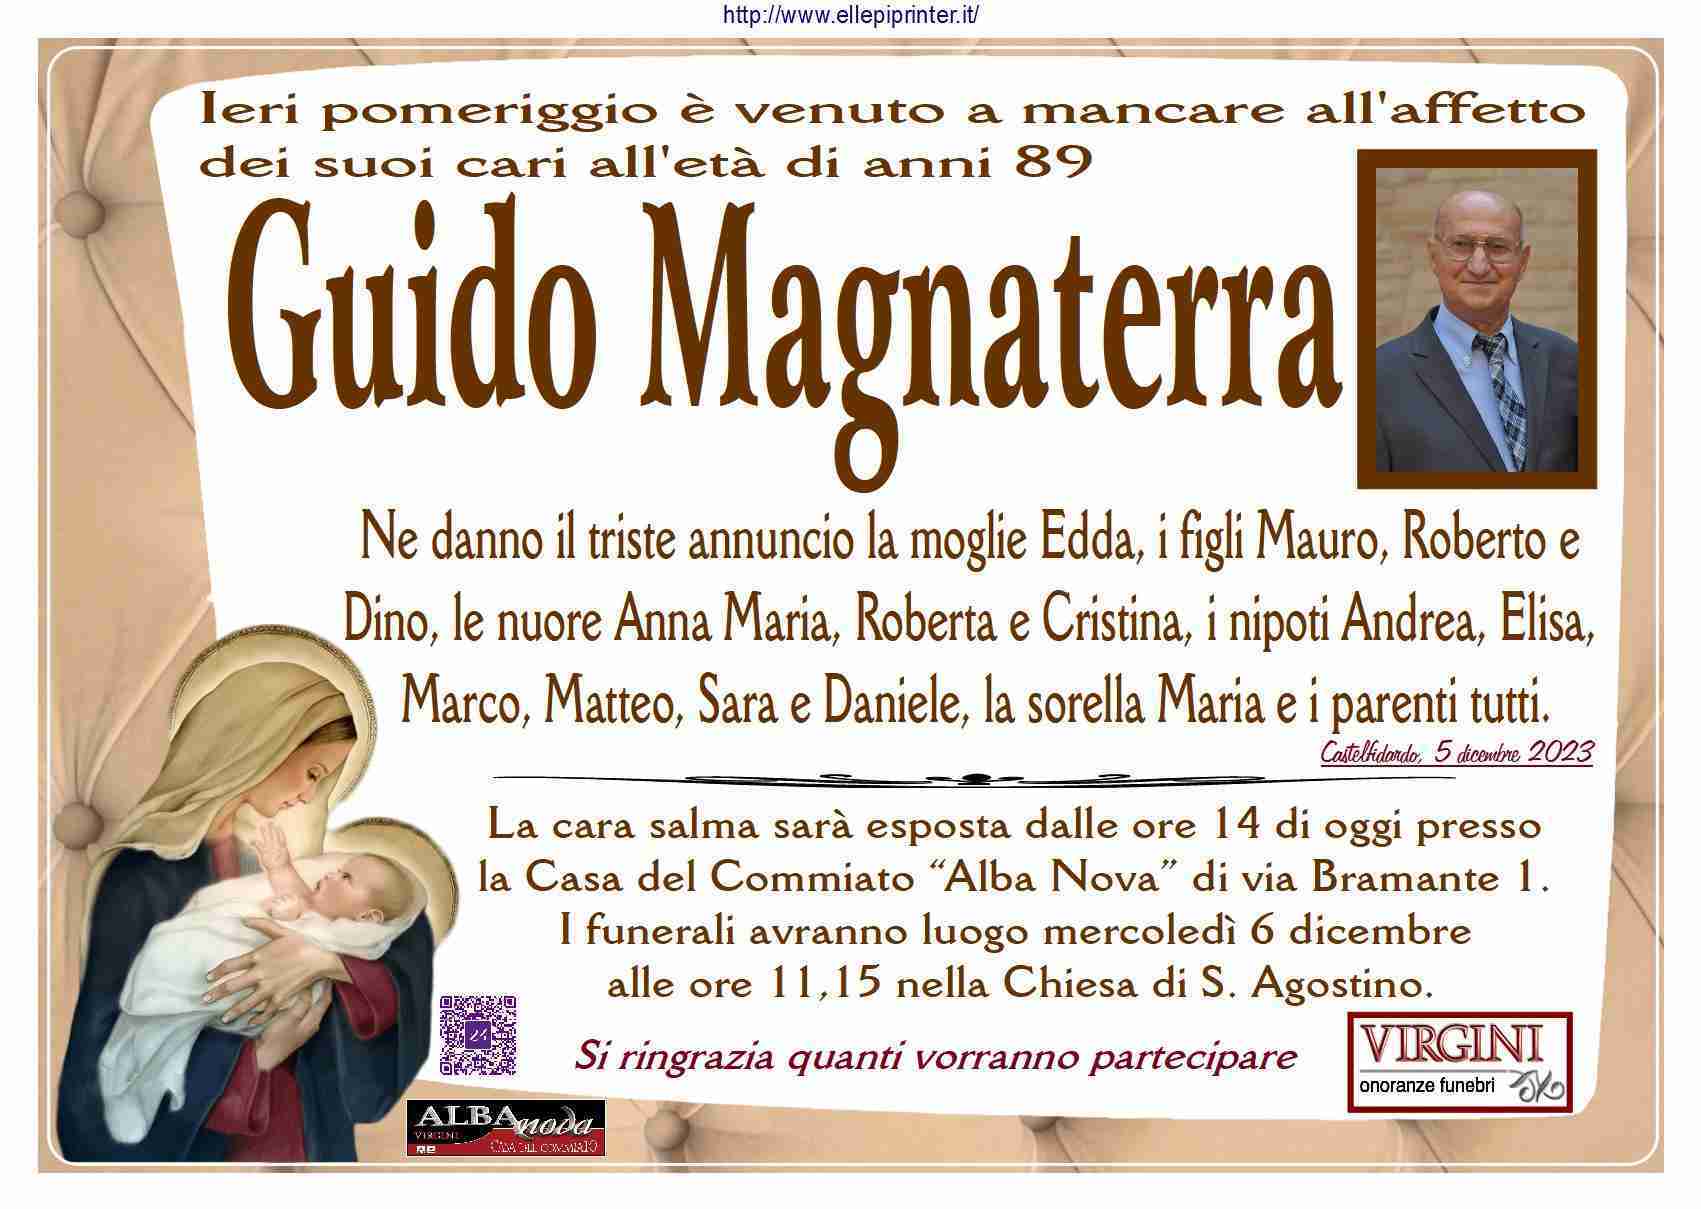 Guido Magnaterra